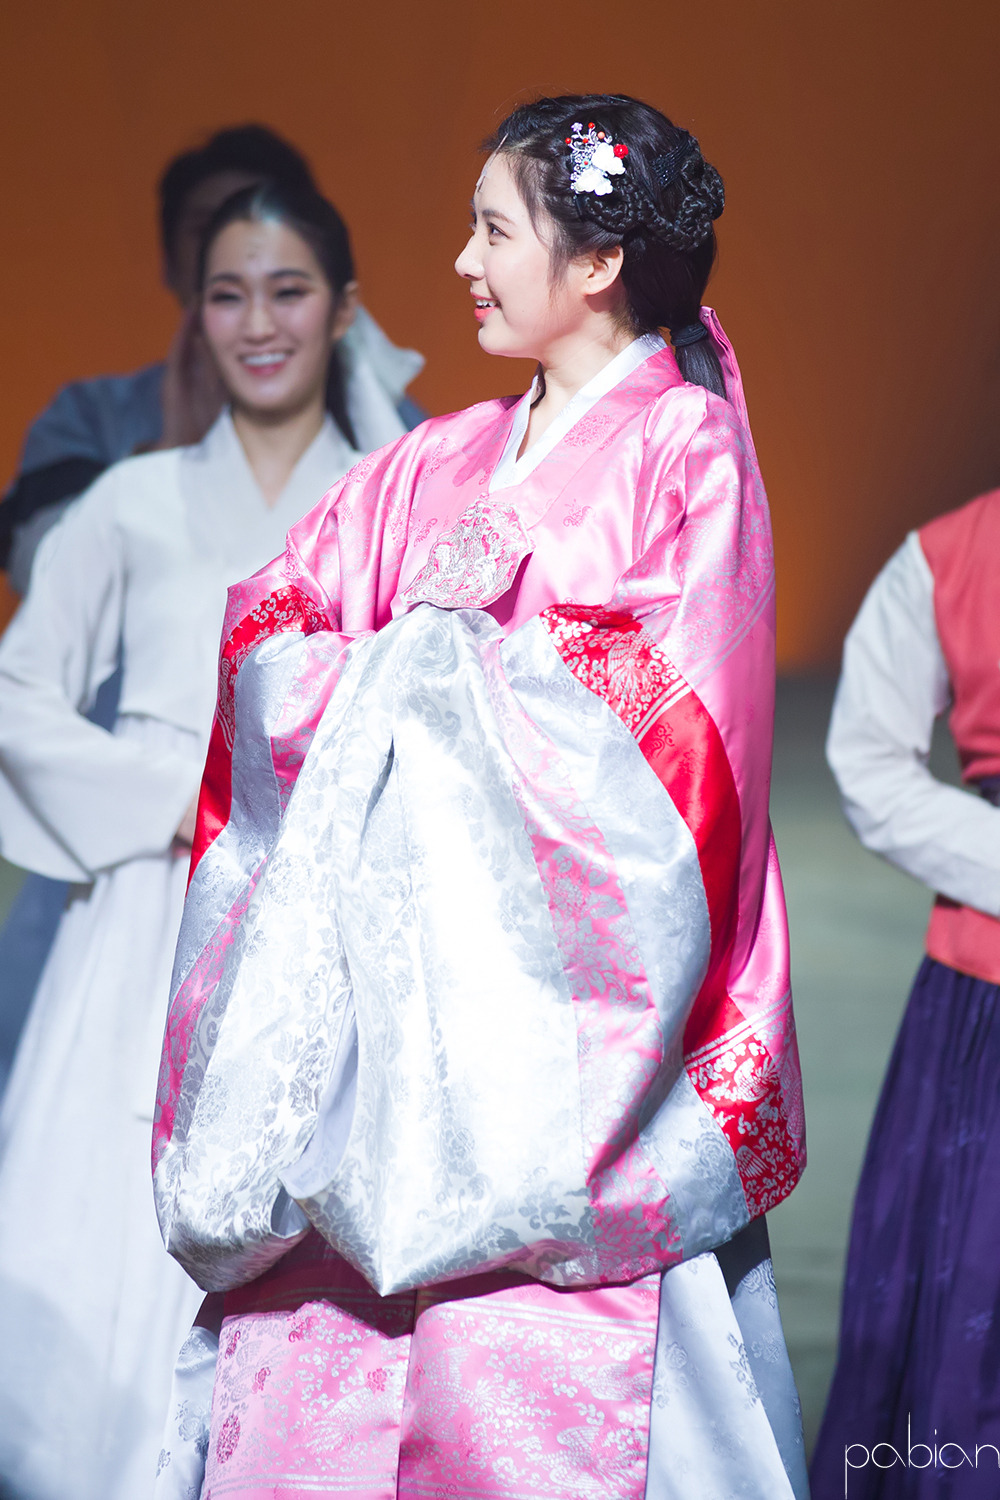 [OTHER][04-12-2013]Hình ảnh mới nhất từ vở nhạc kịch "The moon that embraces the sun" của SeoHyun - Page 9 217B22465305DBB616C079